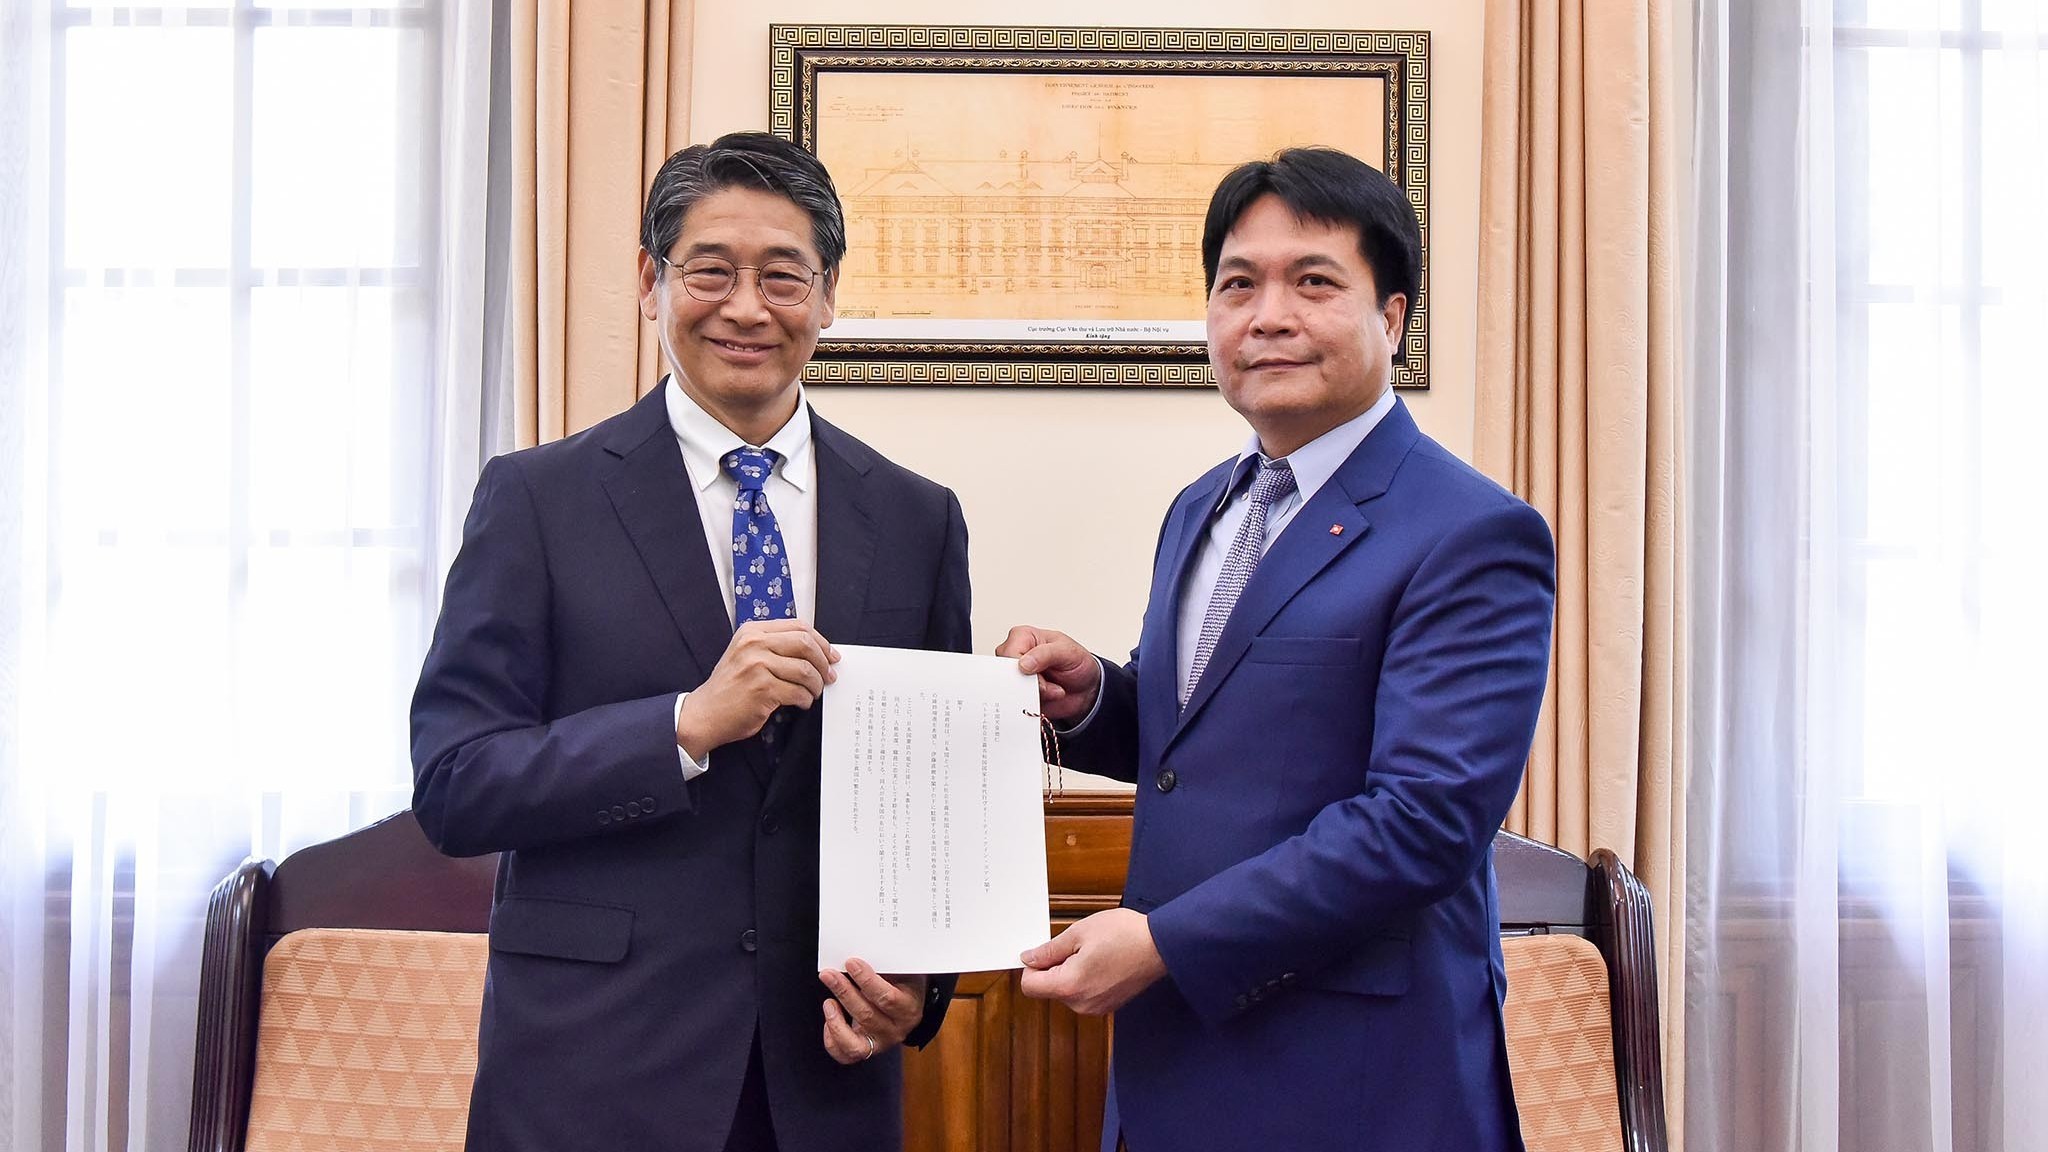 Bộ Ngoại giao tiếp nhận bản sao Thư ủy nhiệm của Nhà vua Nhật Bản bổ nhiệm Đại sứ tại Việt Nam